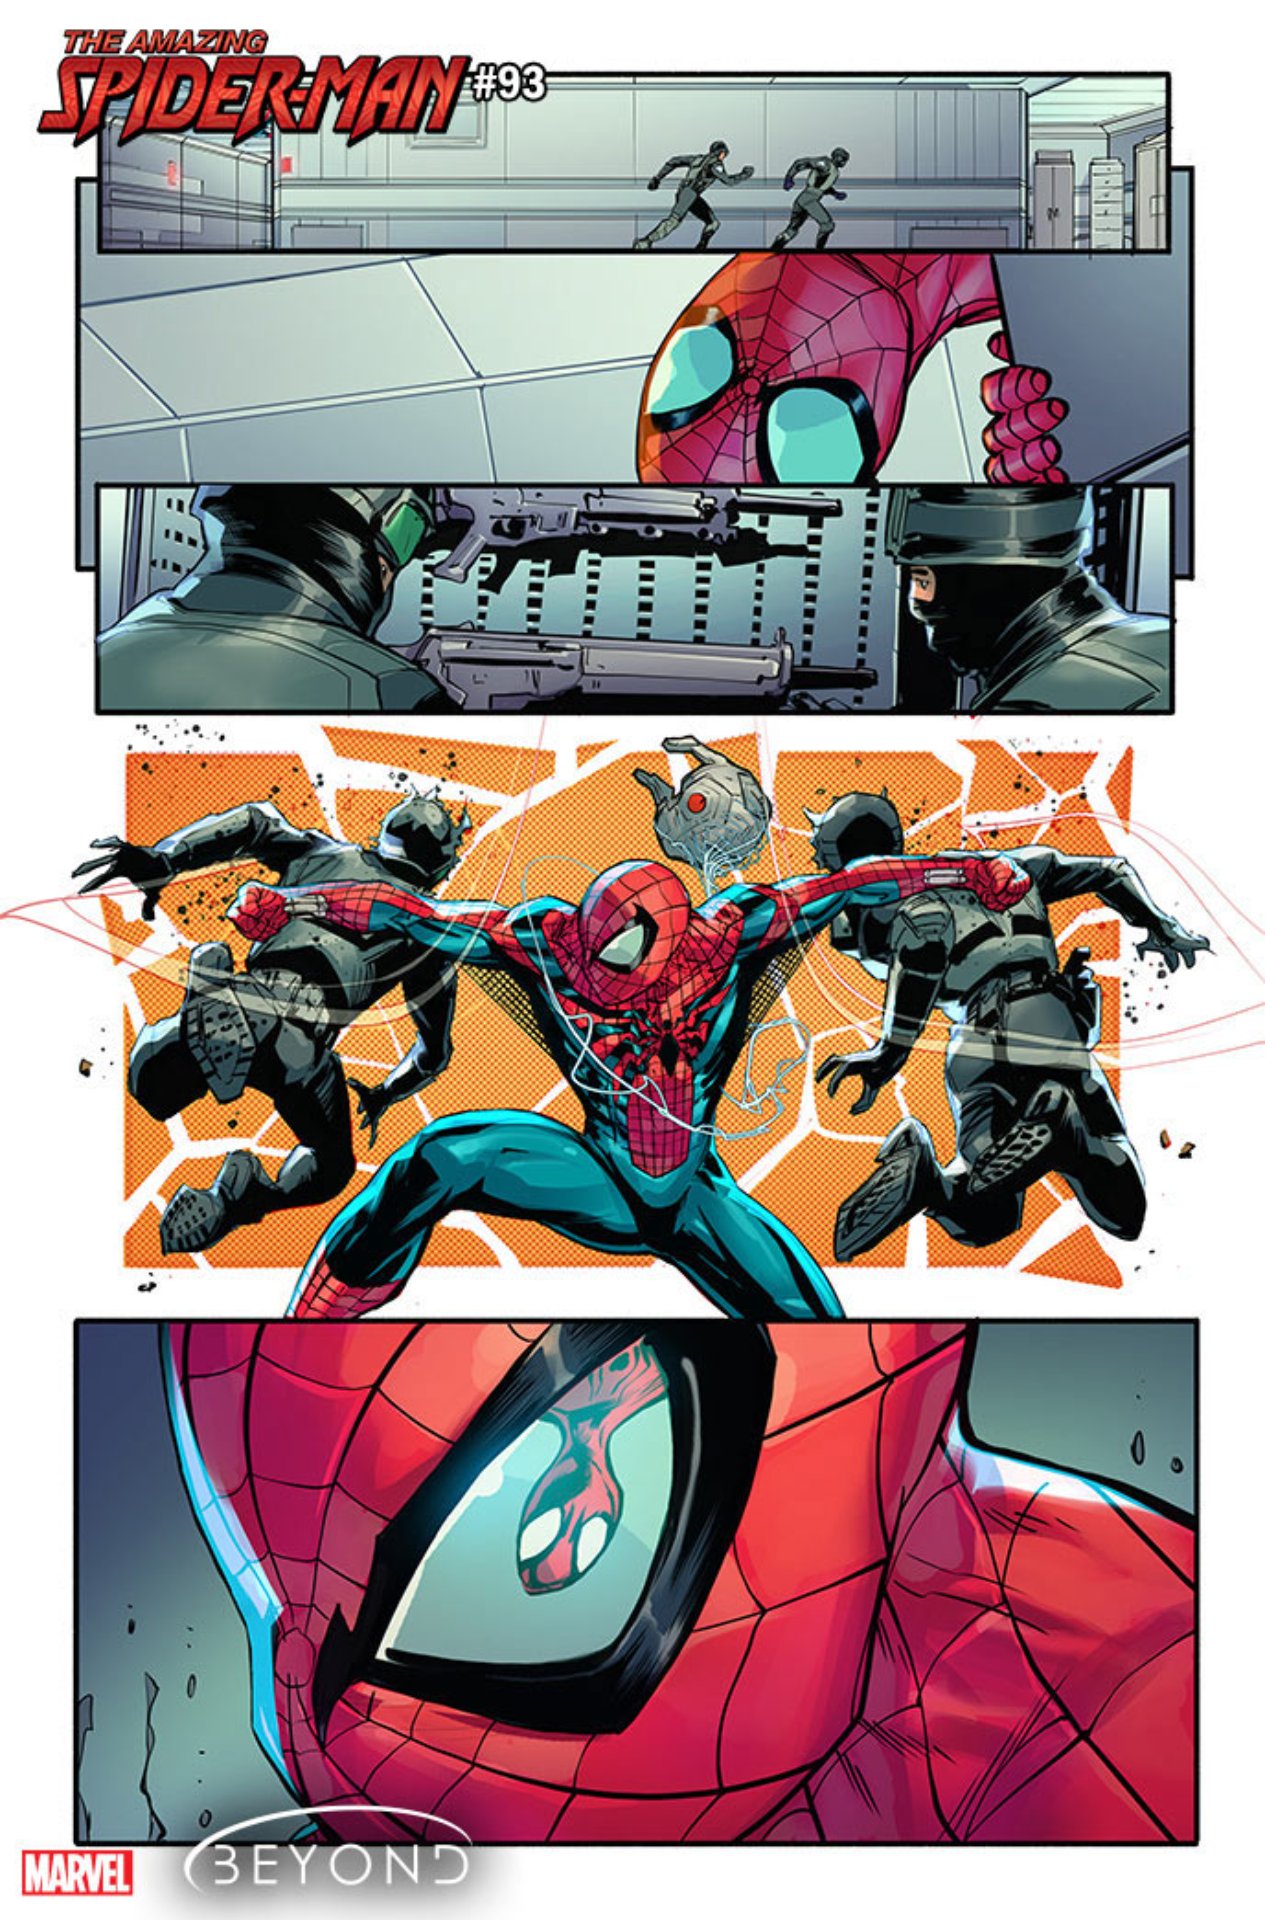 Erstaunlicher Spider-Man Nr. 93